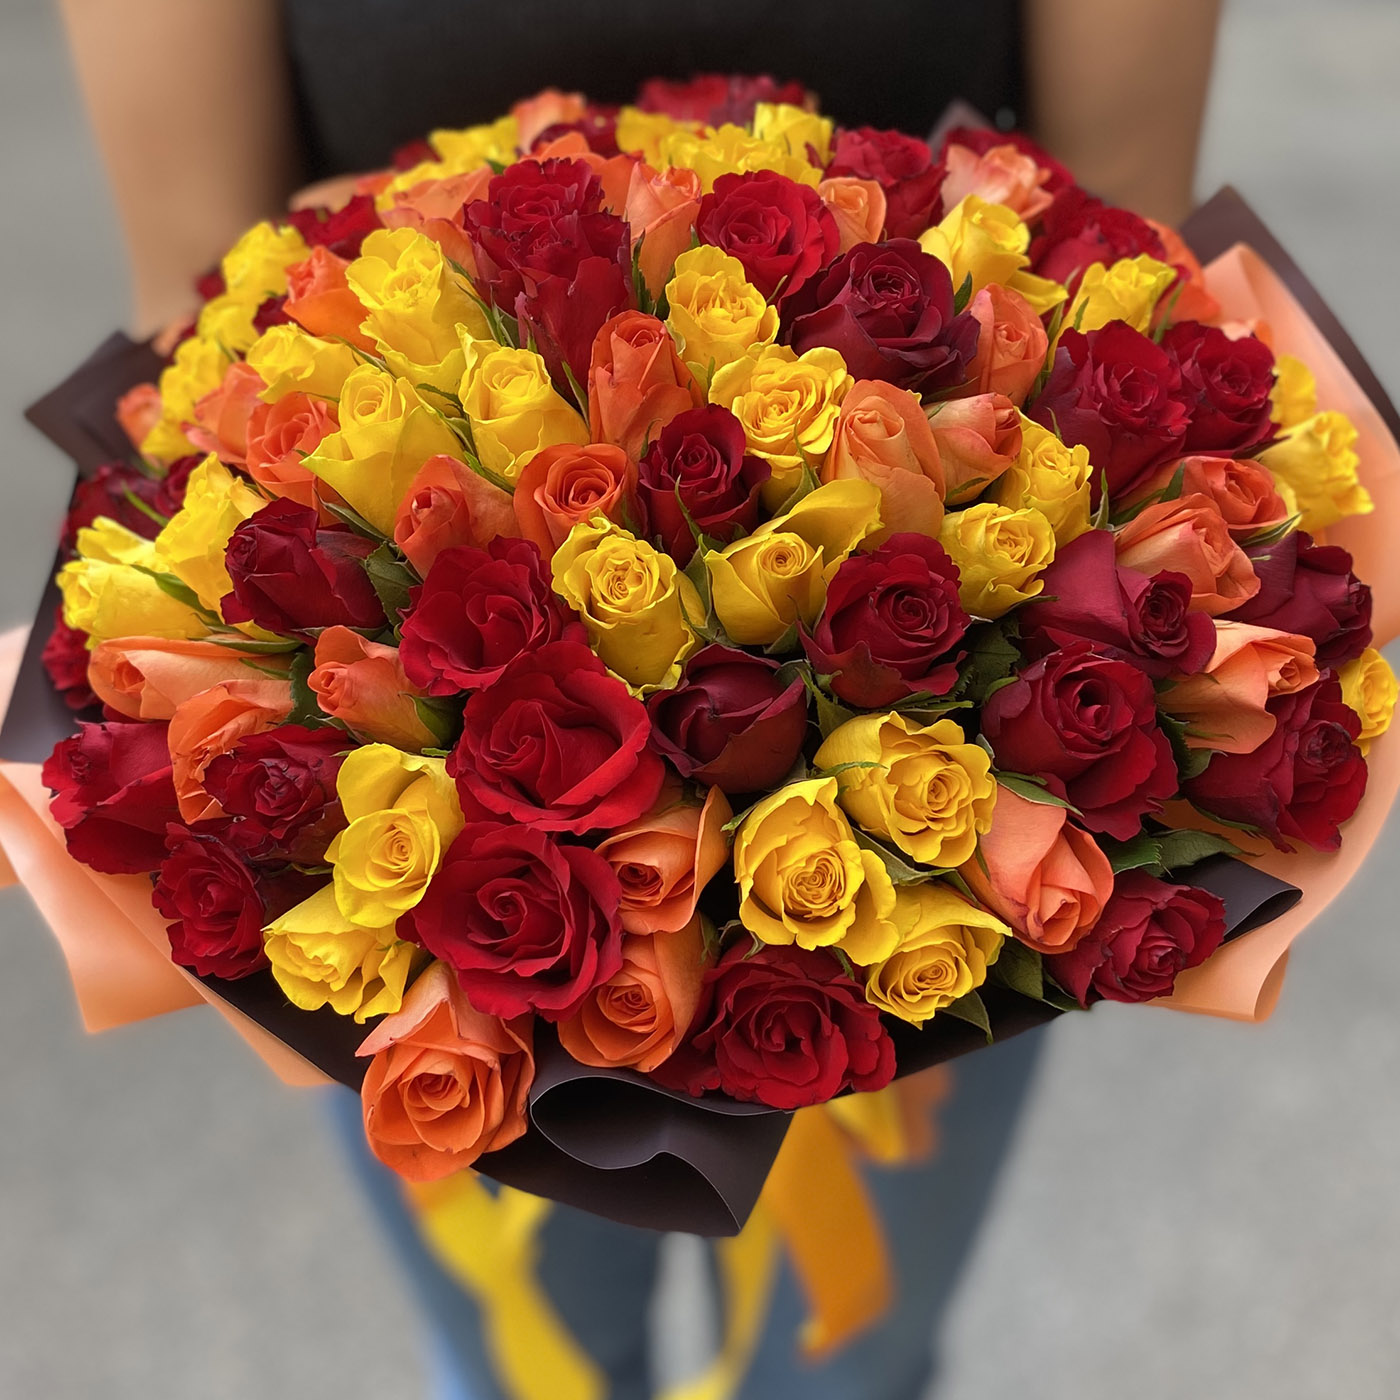 ШикарныЙ букет с разноцветными розами